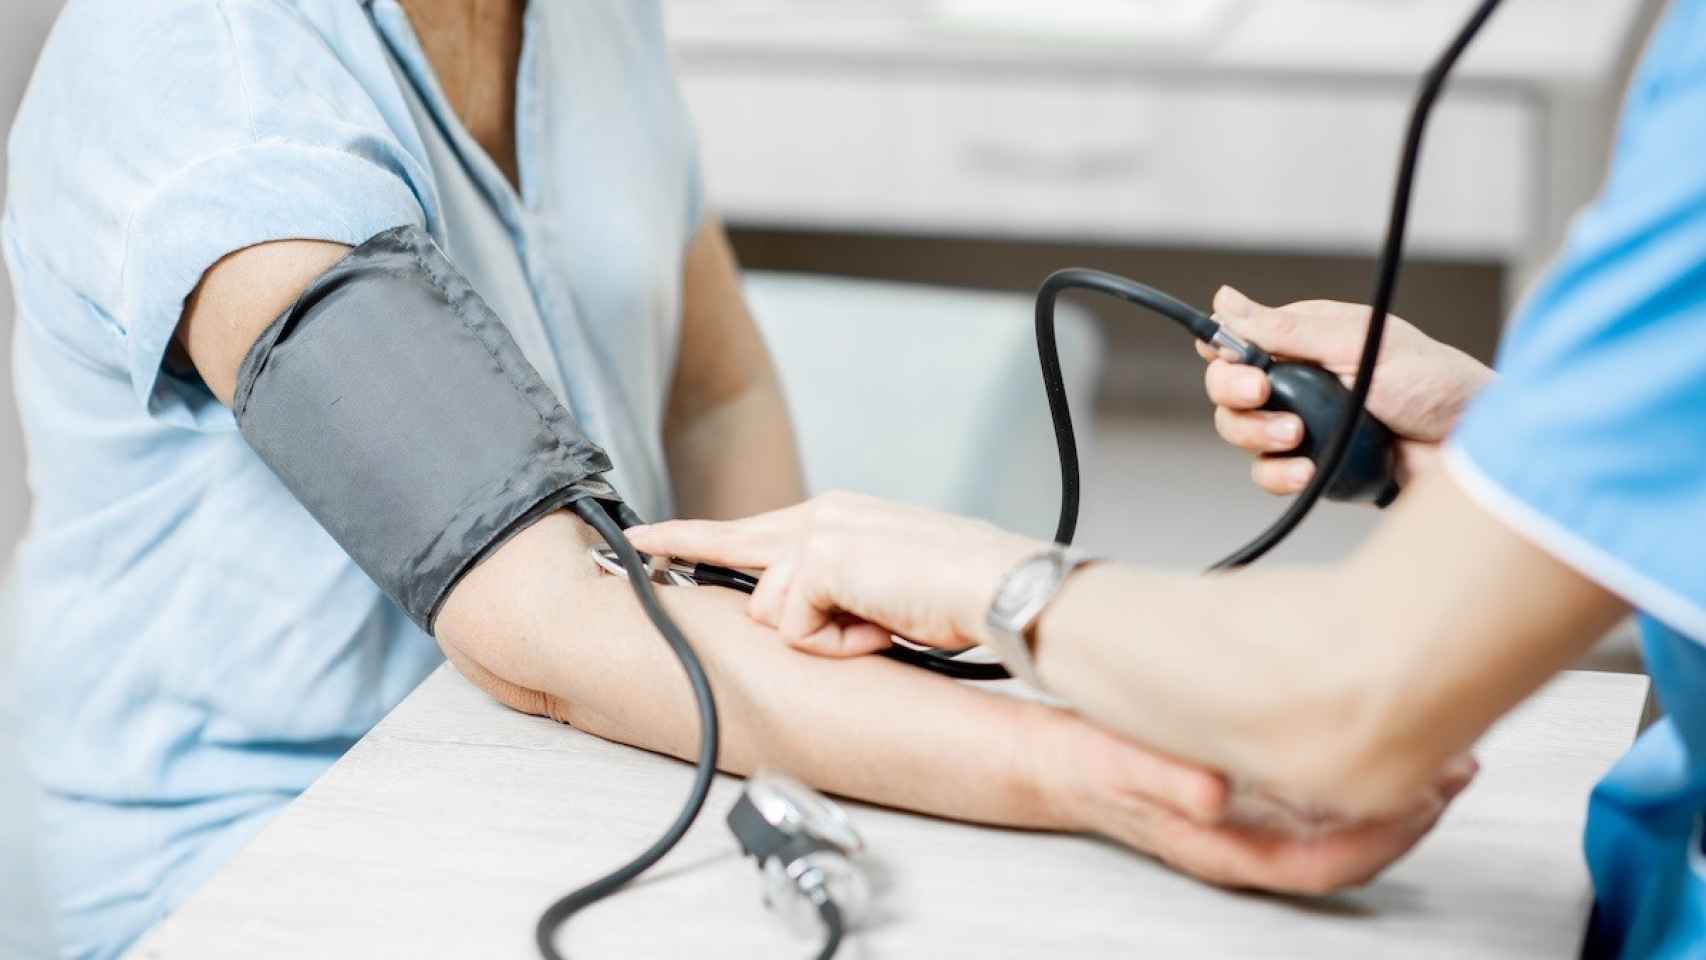 Enfermera midiendo la presión arterial de una paciente de edad avanzada, en una imagen de archivo.